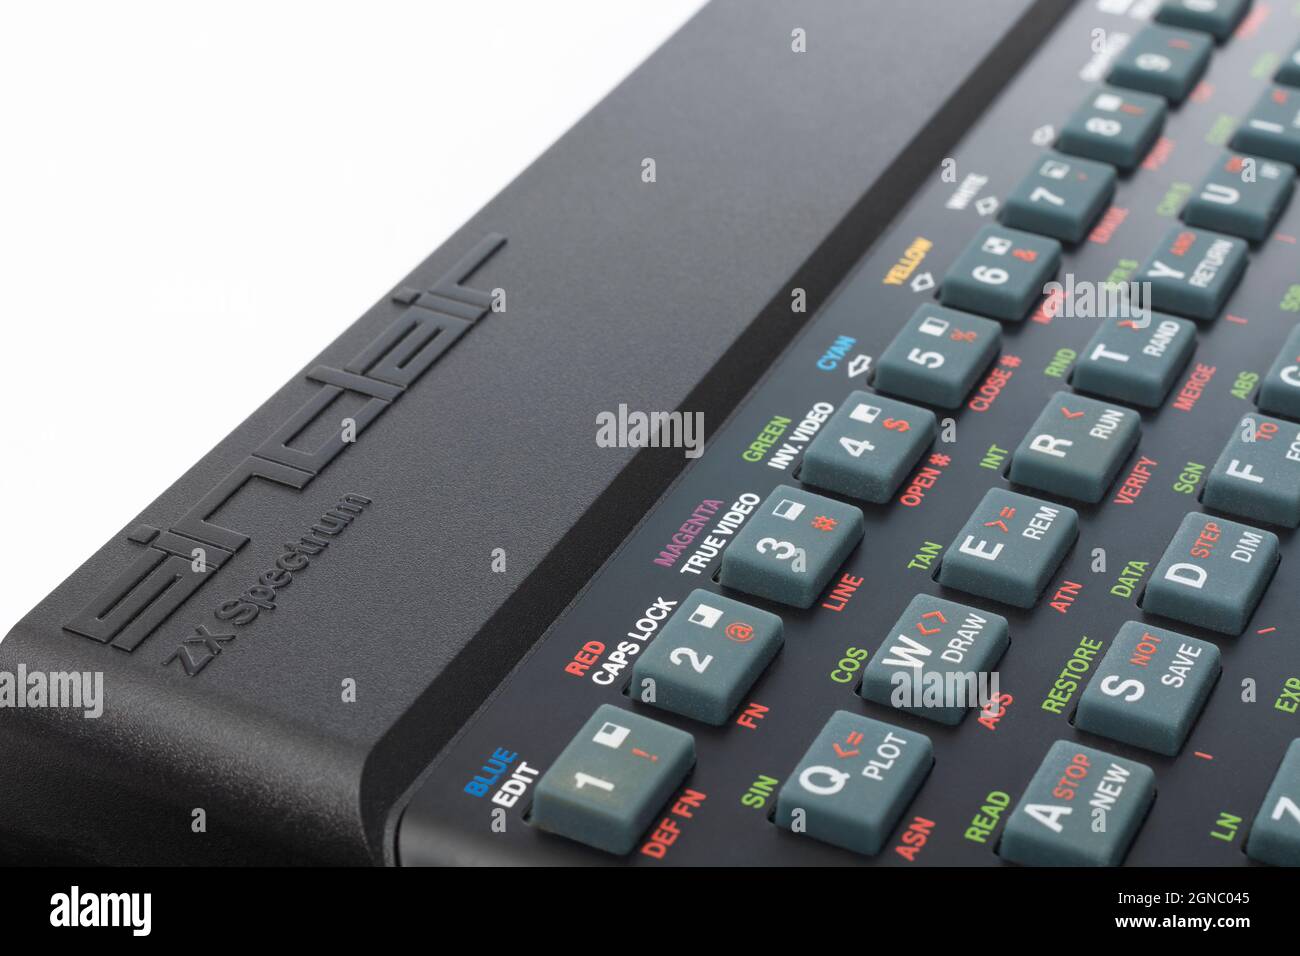 Chiudi il logo in rilievo Sinclair ZX Spectrum e parte della tastiera Qwerty. Computer domestico vintage a 8 bit degli anni '80 (vedere le note). Foto Stock